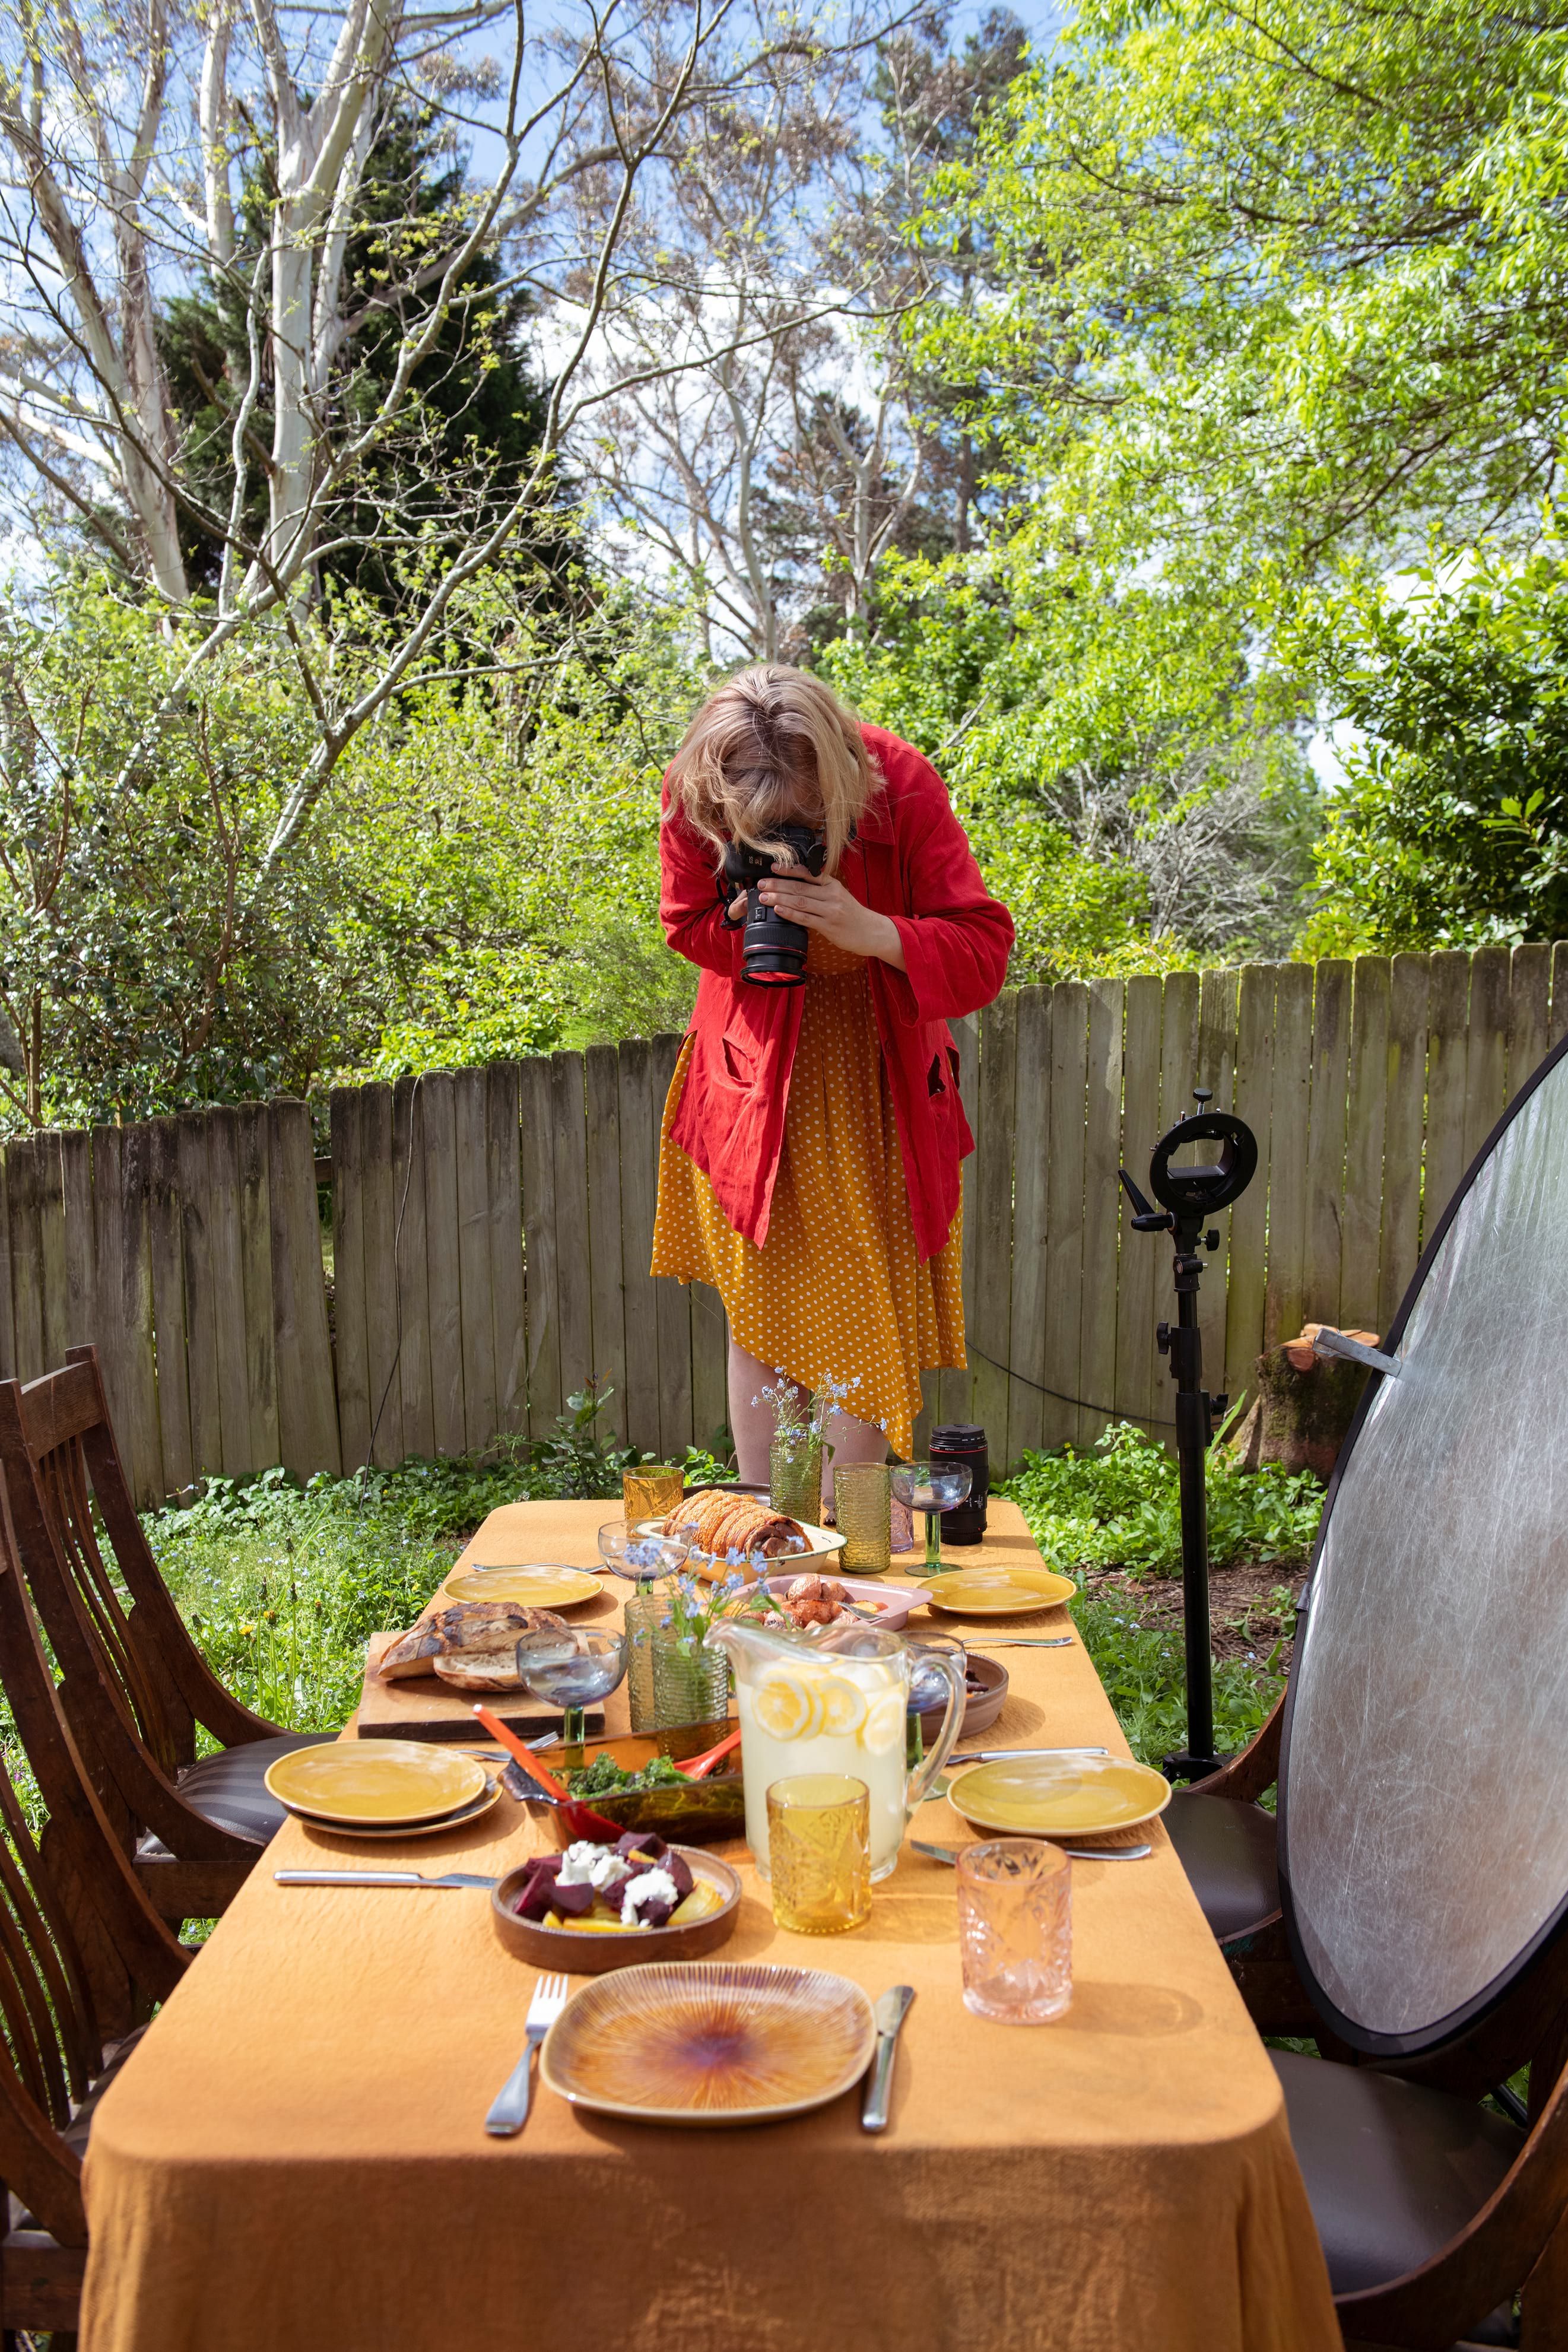 Una mujer toma una fotografía de una mesa con comida encima.